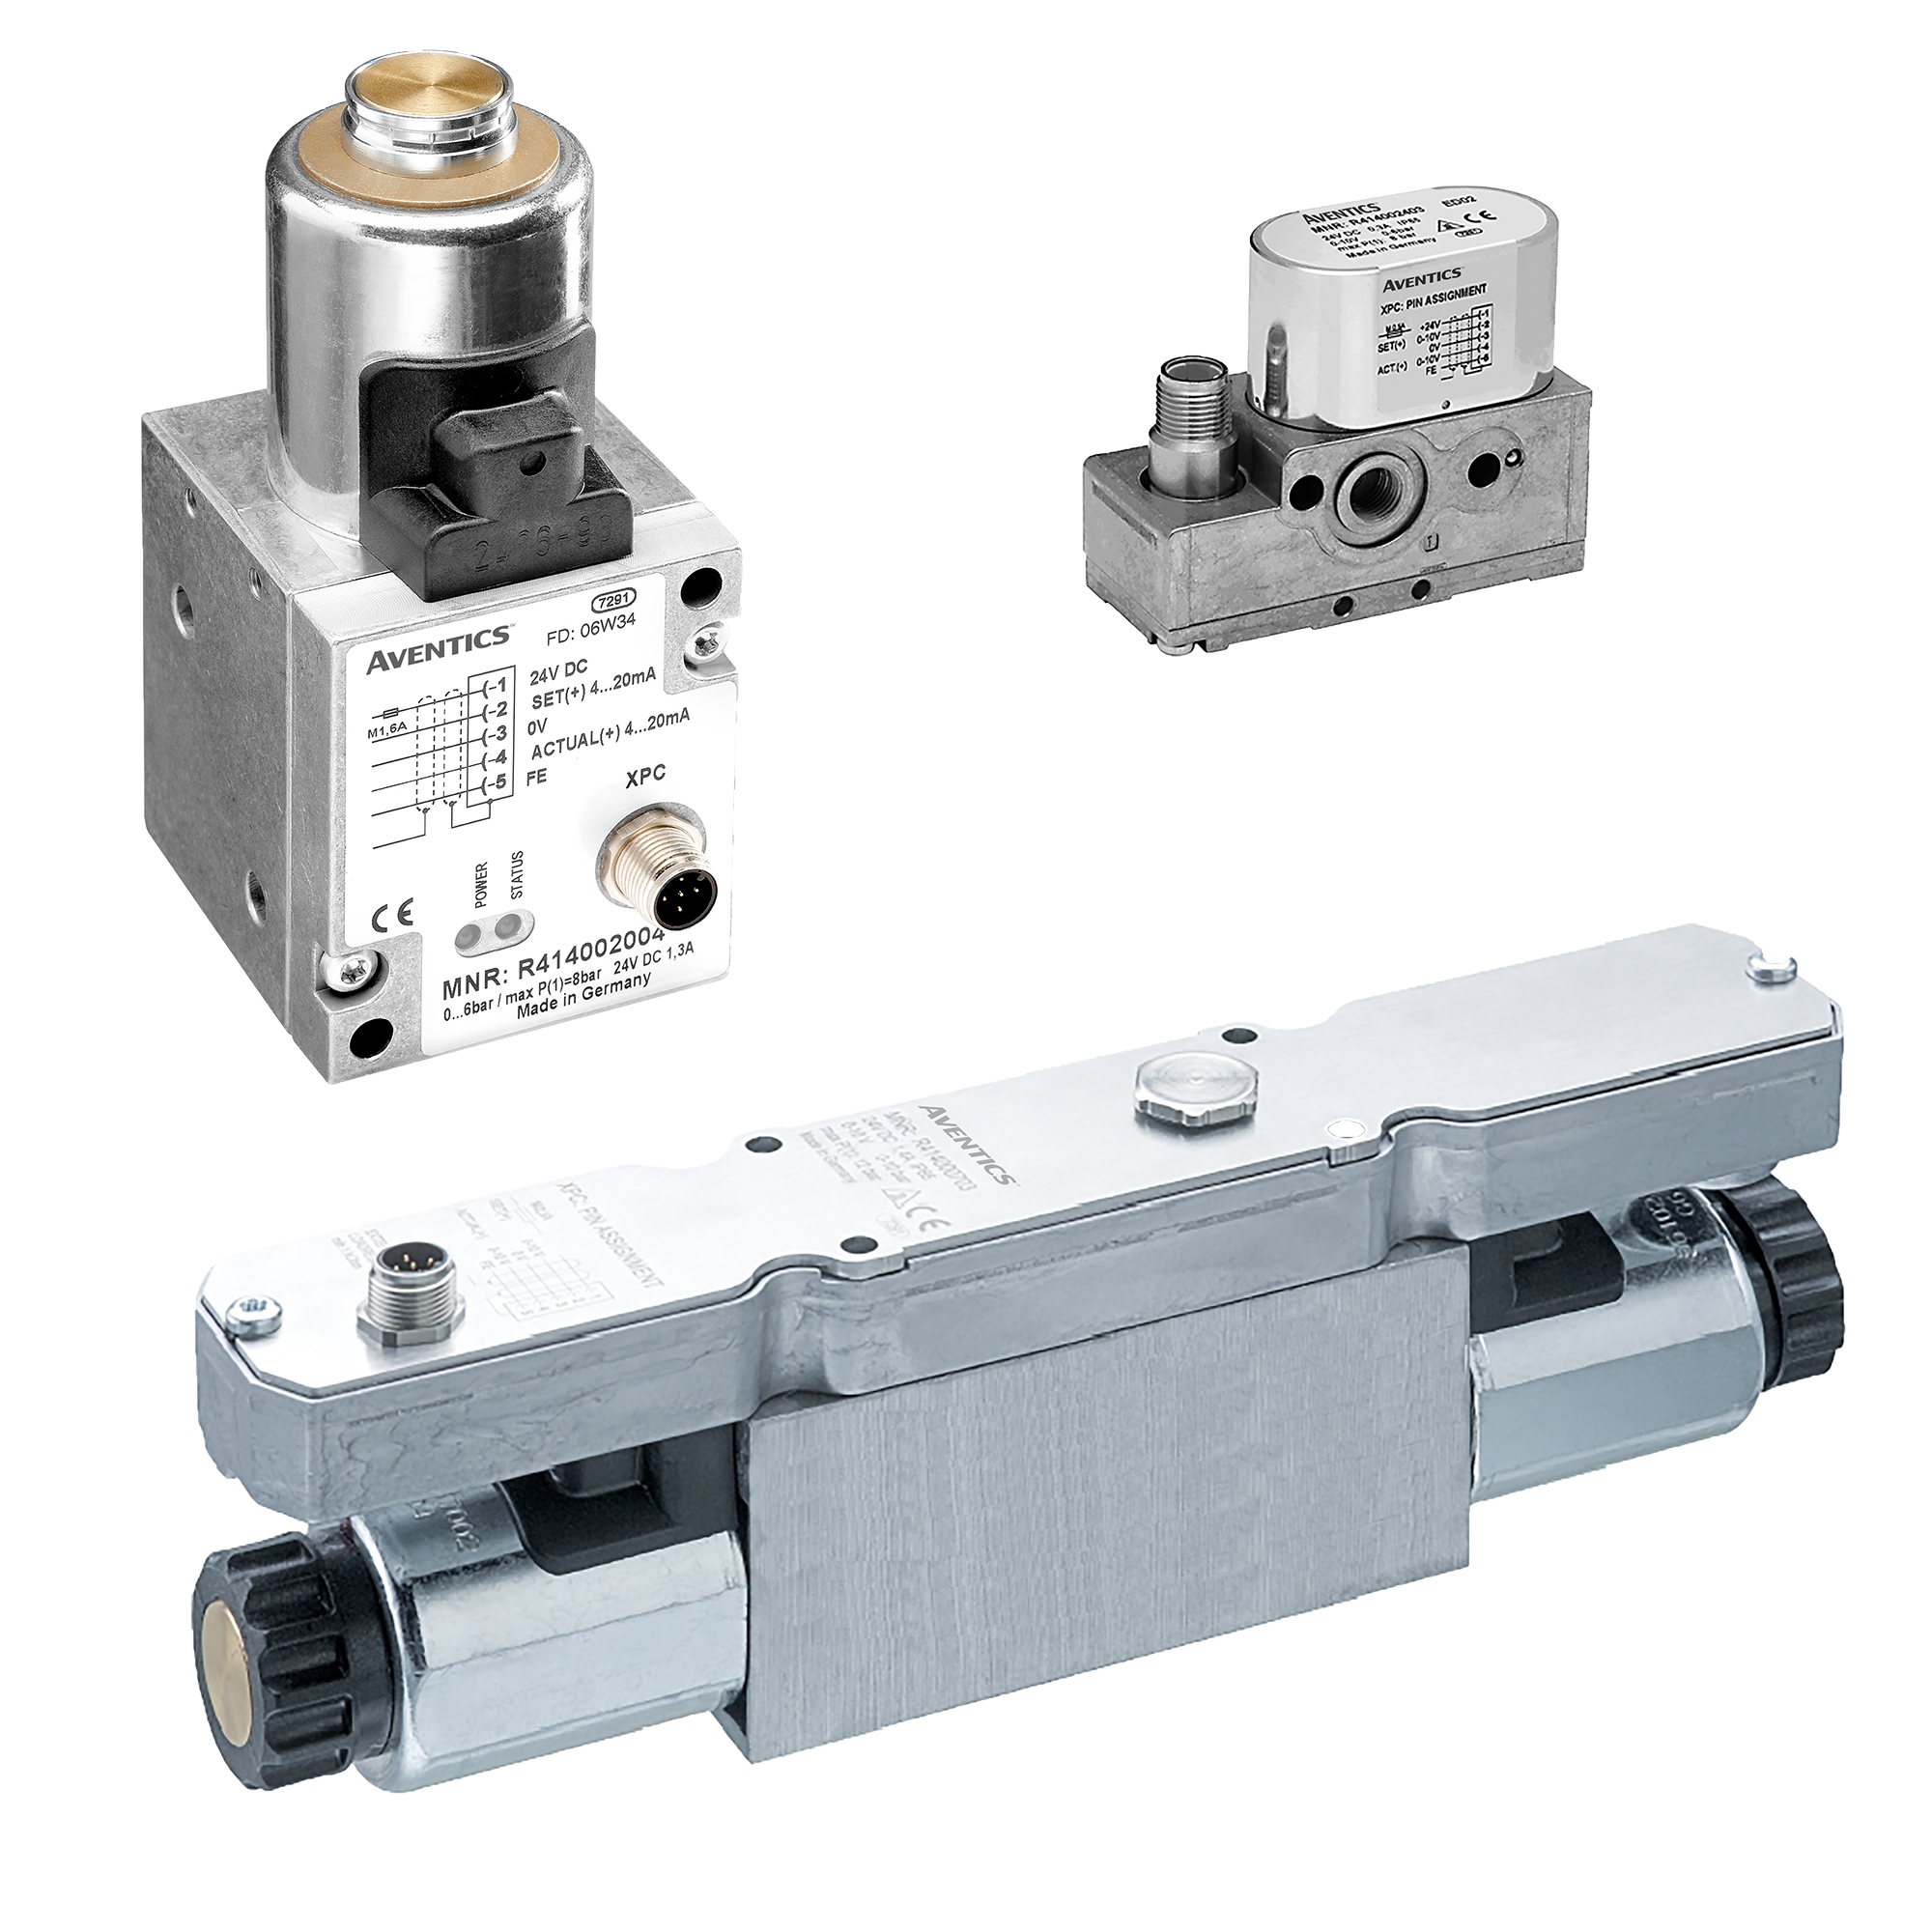 Pressure control valve by Emerson Aventics